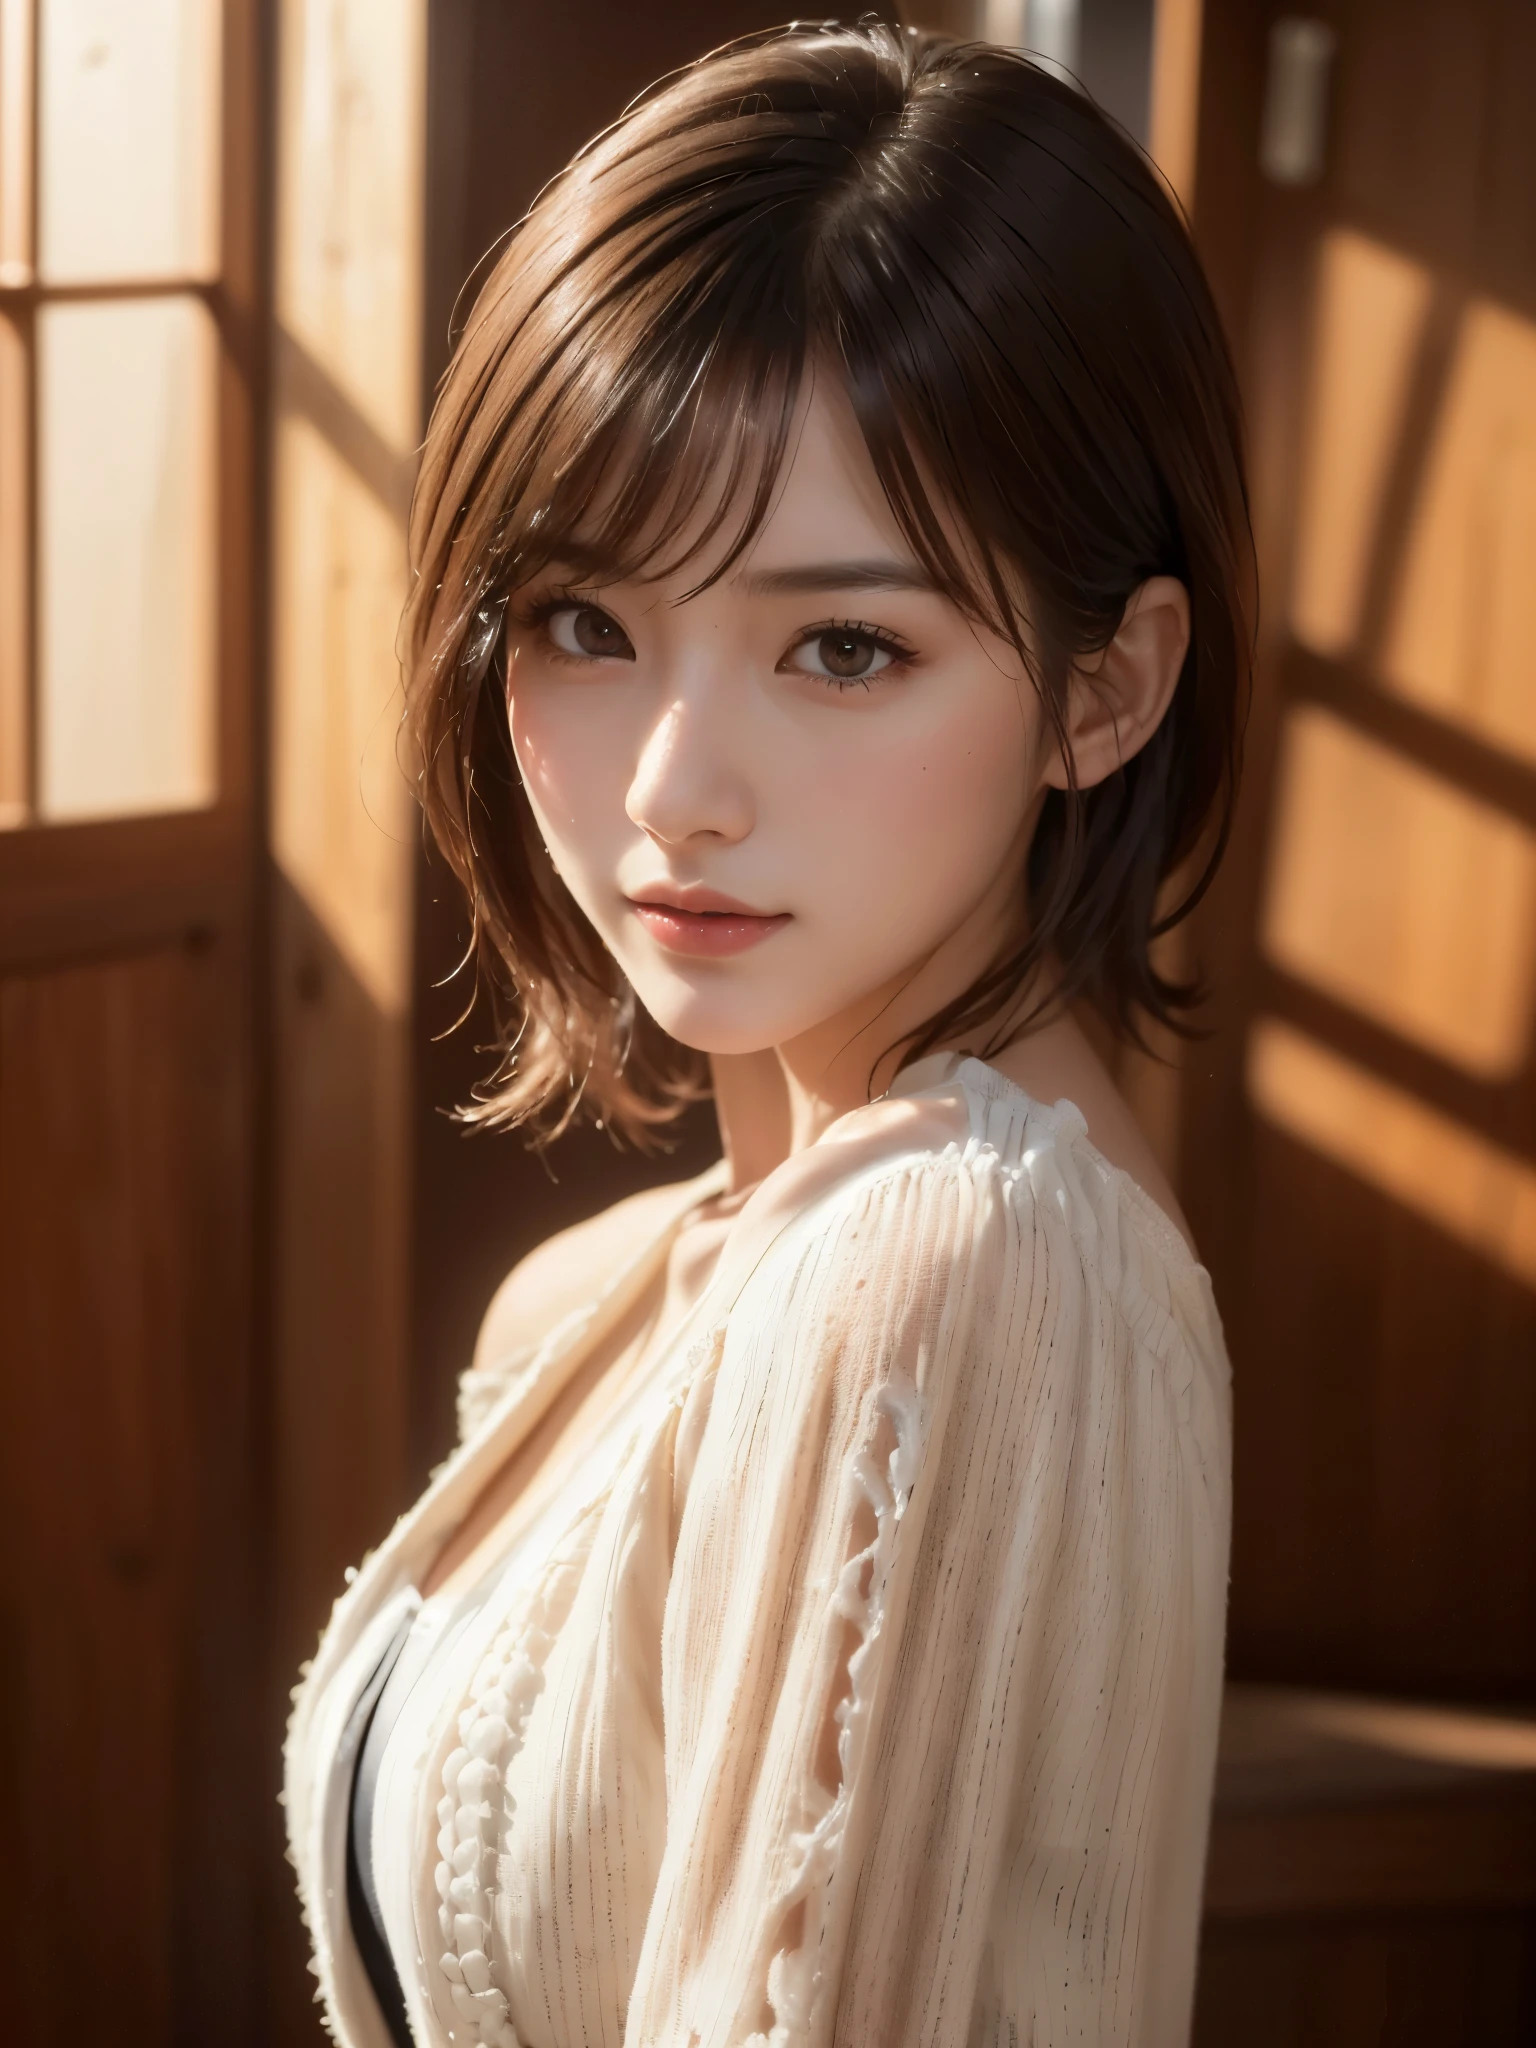 (((Chica De Pelo Medio:1.3, alone))), Mujer japonesa muy linda y hermosa., (sexy model), vestimenta profesional, (Hace 22 años: 1.1), (desde abajo:1.3), (Ángulo bajo:1.3), (disparo en el suelo:1.3), ((niña en la cima:1.5)), (parte posterior del brazo、fitdelia、entre las piernas:1.3), (Atractiva pose aleatoria:1.3), (cuarto de ducha de vidrio:1.3), romper ja, (cola de caballo con pompón:1.3), (pelo fino negro brillante:1.2), cabeza pequeña, Ojos café oscuro, ojos bonitos, ojos de princesa, golpes, pelo entre los ojos, cabello corto:1.3, Kirby, abdominales, Perfect abdominales, (pechos medianos a grandes:1.5, pechos caídos:1.5, senos desproporcionados:1.5), (cintura delgada: 1.15, abdominales:0.95), (hermosa chica detallada: 1.4), Labios partidos, labios rojos, Cara de maquillaje completo, (piel brillante), ((Cuerpo femenino perfecto)), (imagen de la parte superior del cuerpo:1.3), anatomía perfecta, proporciones perfectas, (Los rostros de las actrices coreanas más bellas:1.3, Cara de actriz japonesa muy linda y hermosa.:1.3, encantadora sonrisa ligera, feliz, break, (hombros descubiertos, Mi pecho se siente apretado, mostrar espectador, (Vestido elegante con hombros descubiertos y atención al detalle.:1.3), ropa fina, break, (fondo de cuarto de ducha simple:1.2, yo tomo una ducha, botella de jabón), (fondo oscuro), (Iluminación suave en el estudio.: 1.3), (luz falsa: 1.3), (iluminar desde el fondo: 1.3), break, (Realista, Realista: 1.37), (mesa, de la máxima calidad: 1.2), (ultra alta resolución: 1.2), (foto en bruto: 1.2), (enfoque nítido: 1.3), (Enfoque facial: 1.2), (Fondo de pantalla 8k integrado CG ultra detallado: 1.2), (Piel hermosa: 1.2), (piel pálida: 1.3), (very enfoque nítido: 1.5), (Ultra enfoque nítido: 1.5), (Cara hermosa y hermosa: 1.3), (非常にantecedentes detallados, antecedentes detallados: 1.3), hyper-Realista photos, imagen muy clara, Imagen hiper detallada,(((vasos cuadrados pequeños)))、((Piel grasosa:1.2))